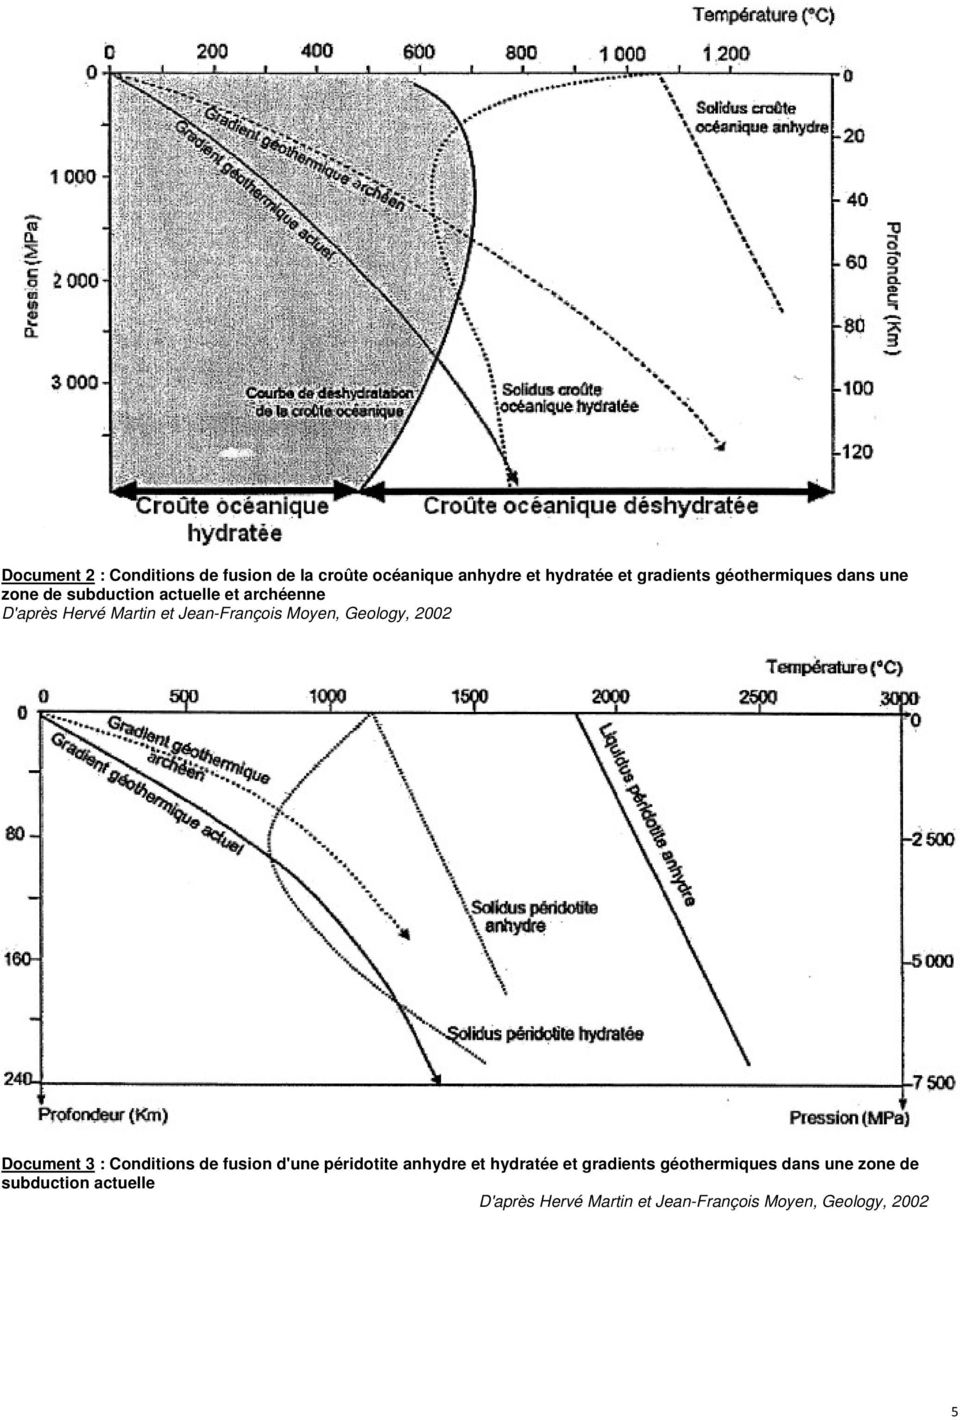 Moyen, Geology, 2002 Document 3 : Conditions de fusion d'une péridotite anhydre et hydratée et